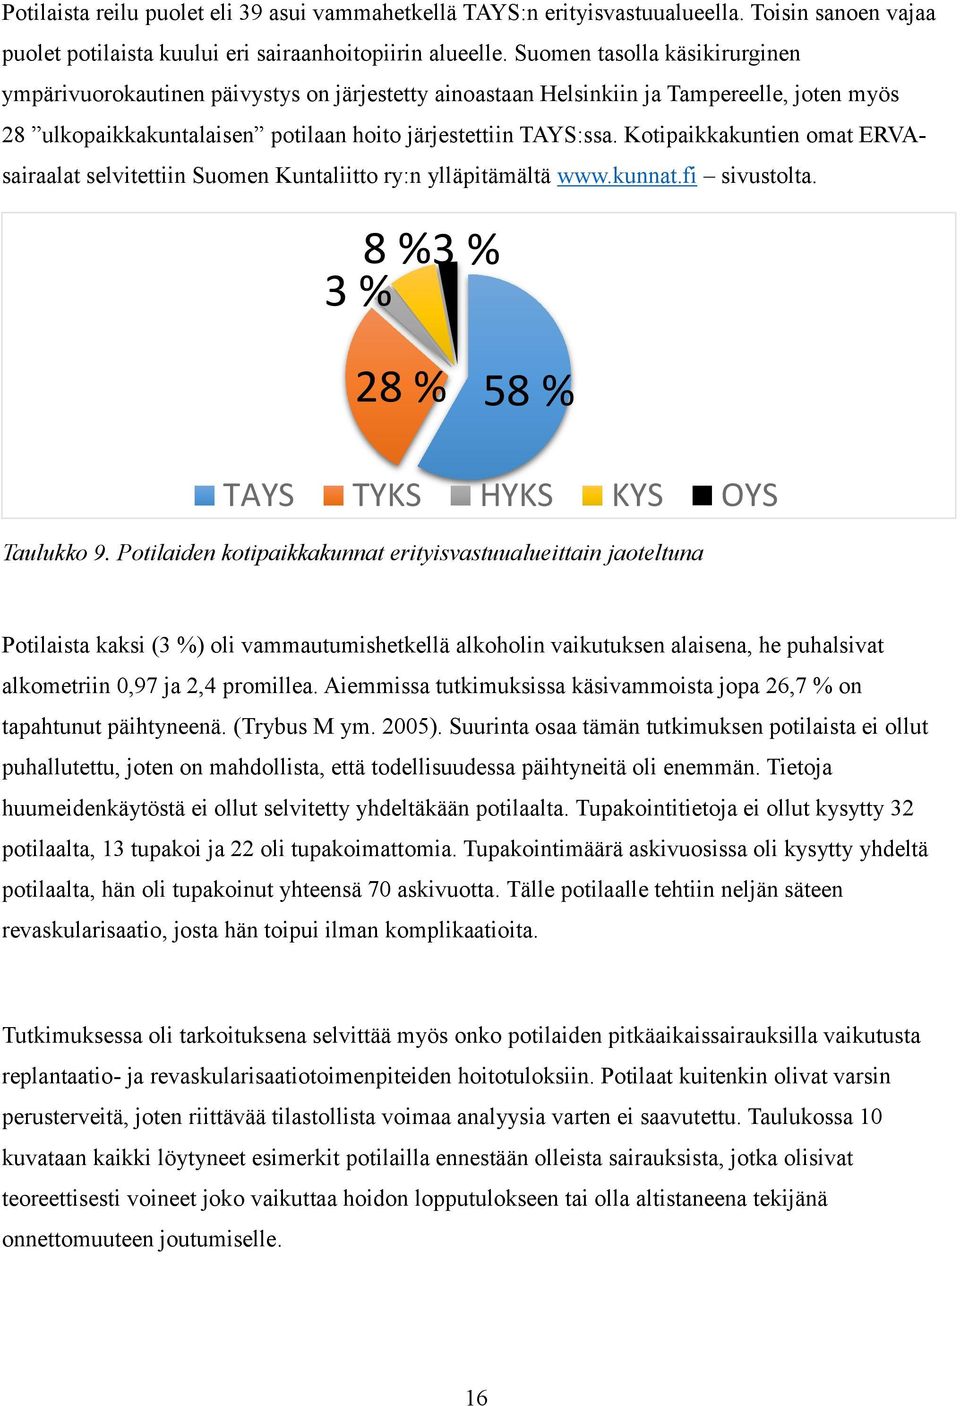 Kotipaikkakuntien omat ERVAsairaalat selvitettiin Suomen Kuntaliitto ry:n ylläpitämältä www.kunnat.fi sivustolta. 3 % 8 %3 % 28 % 58 % TAYS TYKS HYKS KYS OYS Taulukko 9.